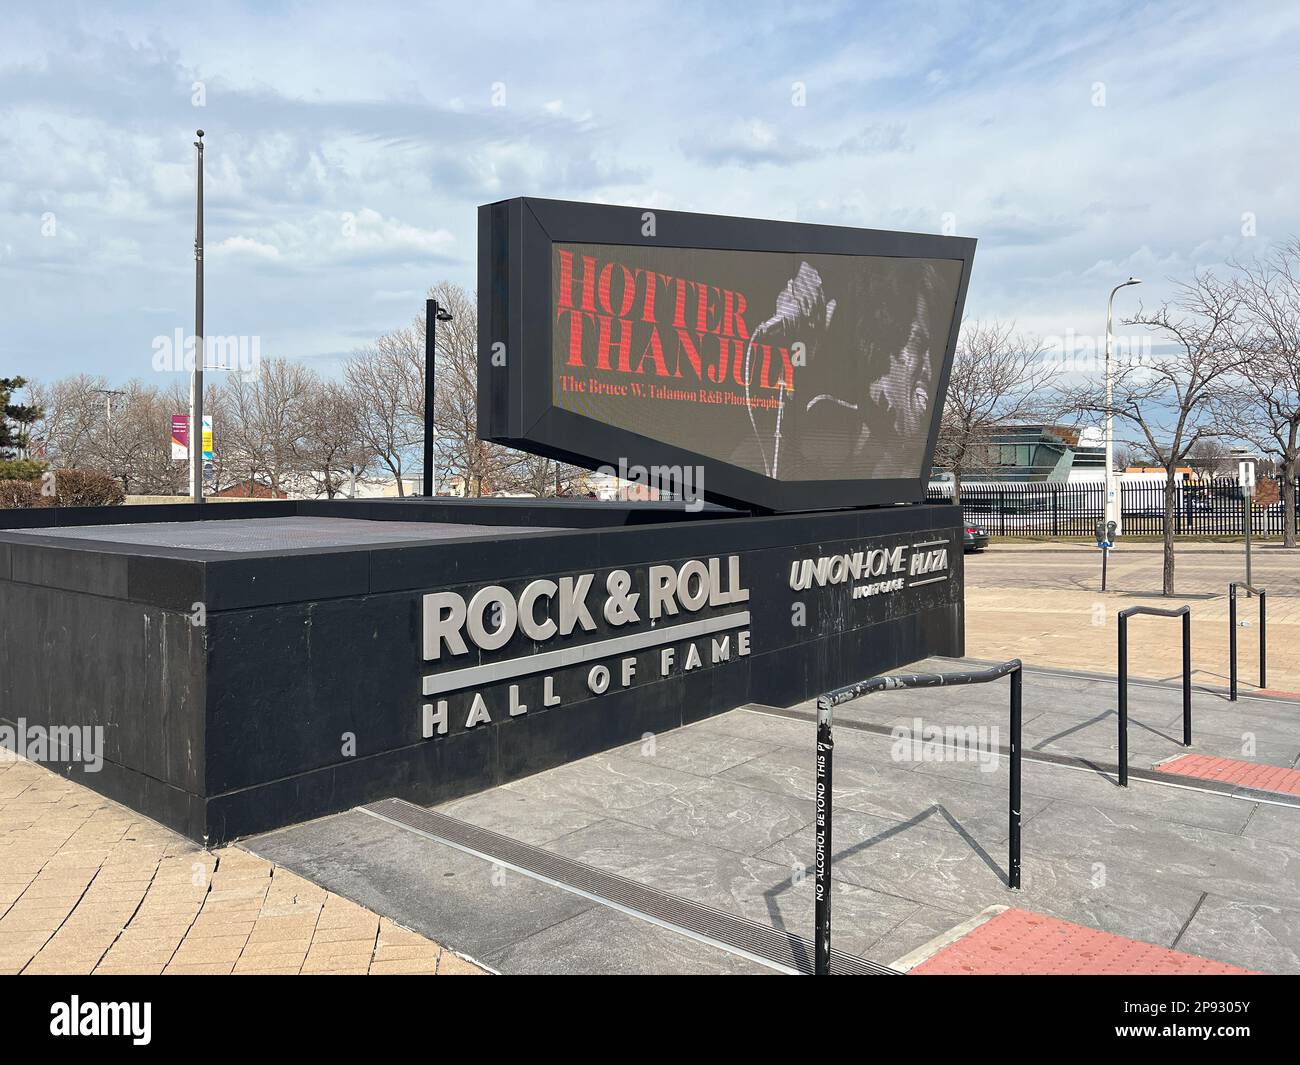 Le Rock and Roll Hall of Fame est situé au cœur du centre-ville de Cleveland et est ouvert au public avec des souvenirs. Banque D'Images